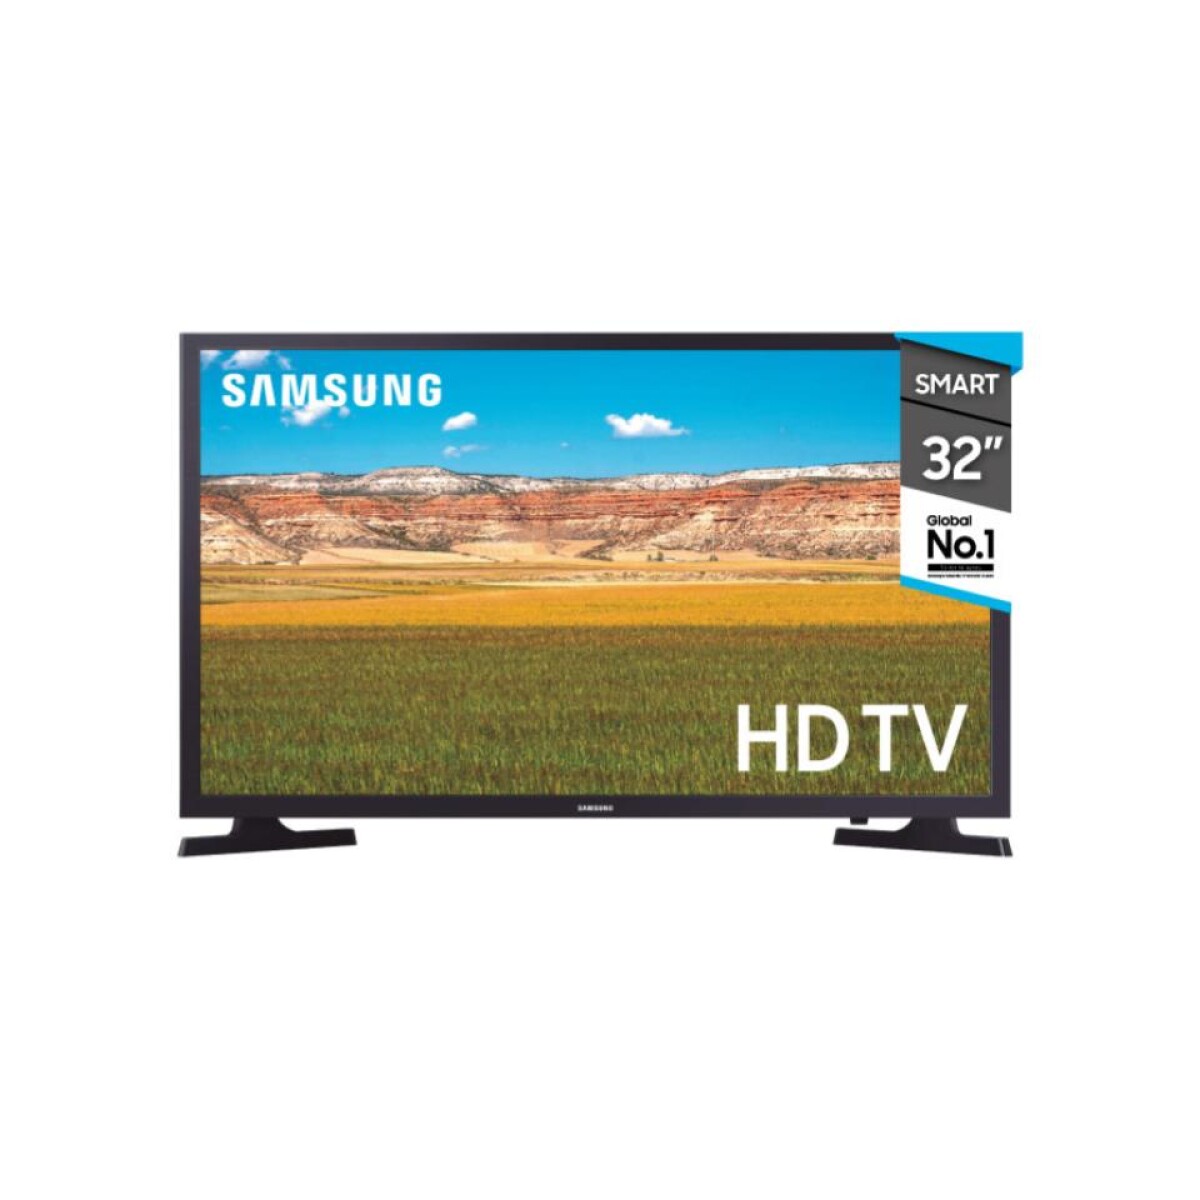 Smart Tv SAMSUNG 32' HD LED UN32T4310 Tizen Con Control Remoto 